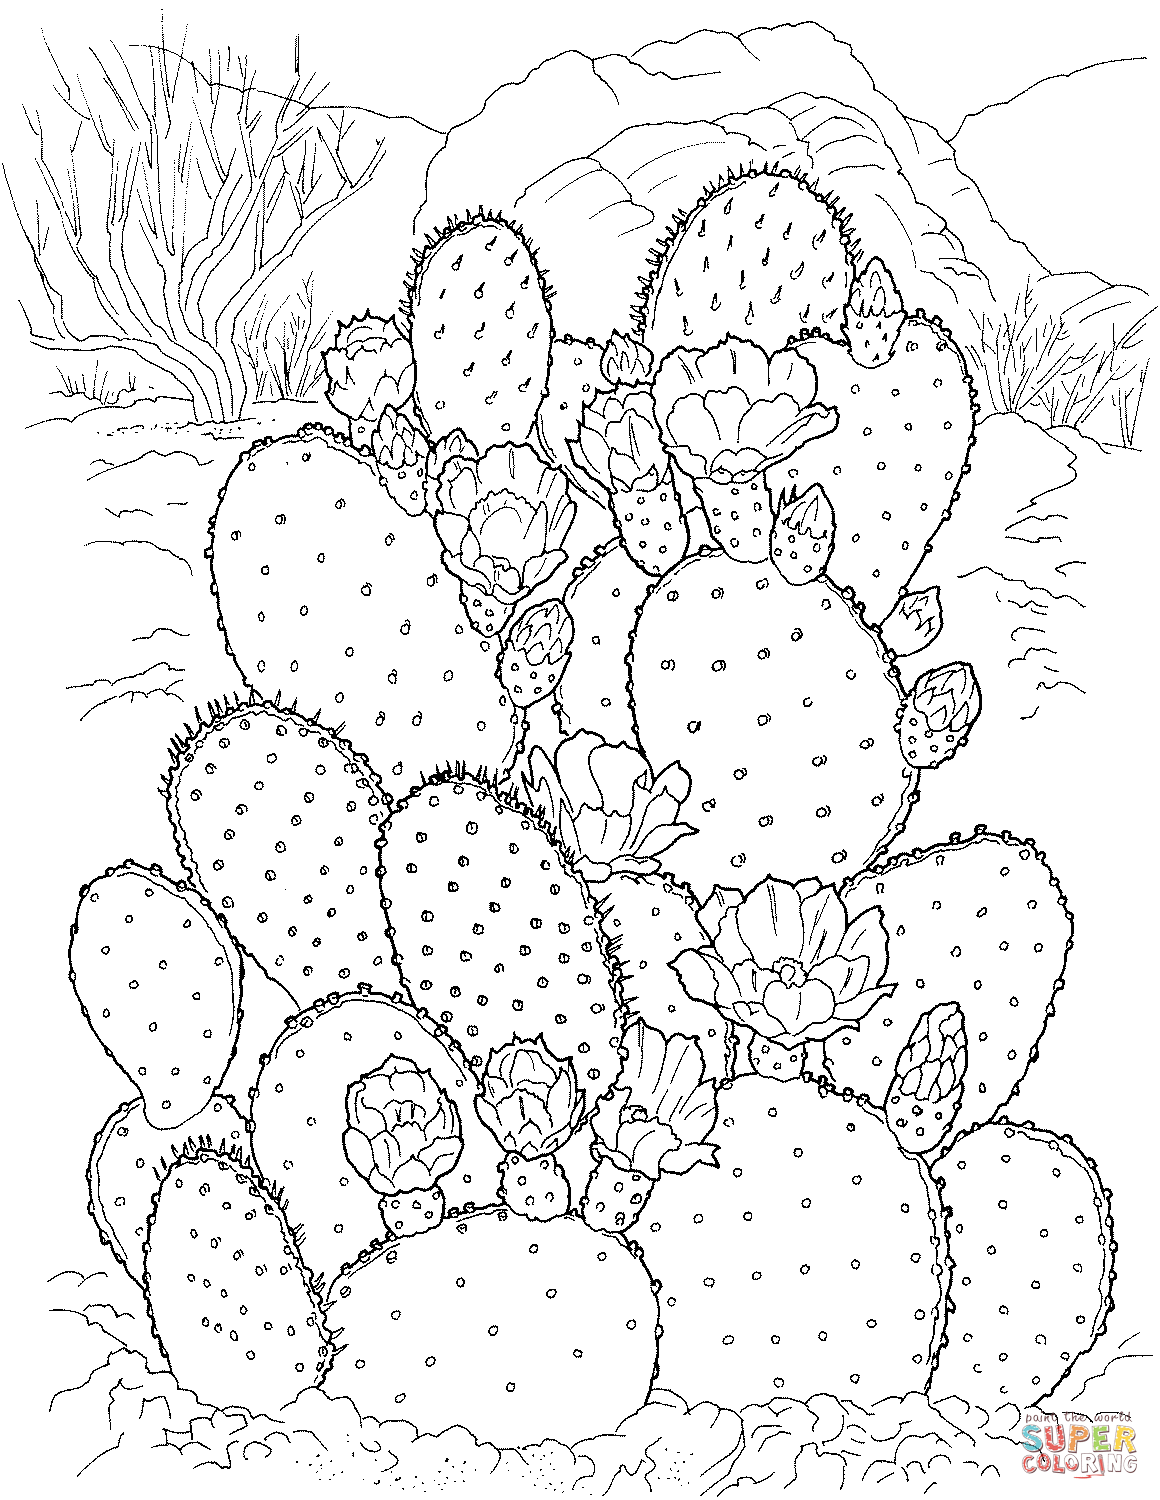 Cactus figue de Barbarie de Cactus